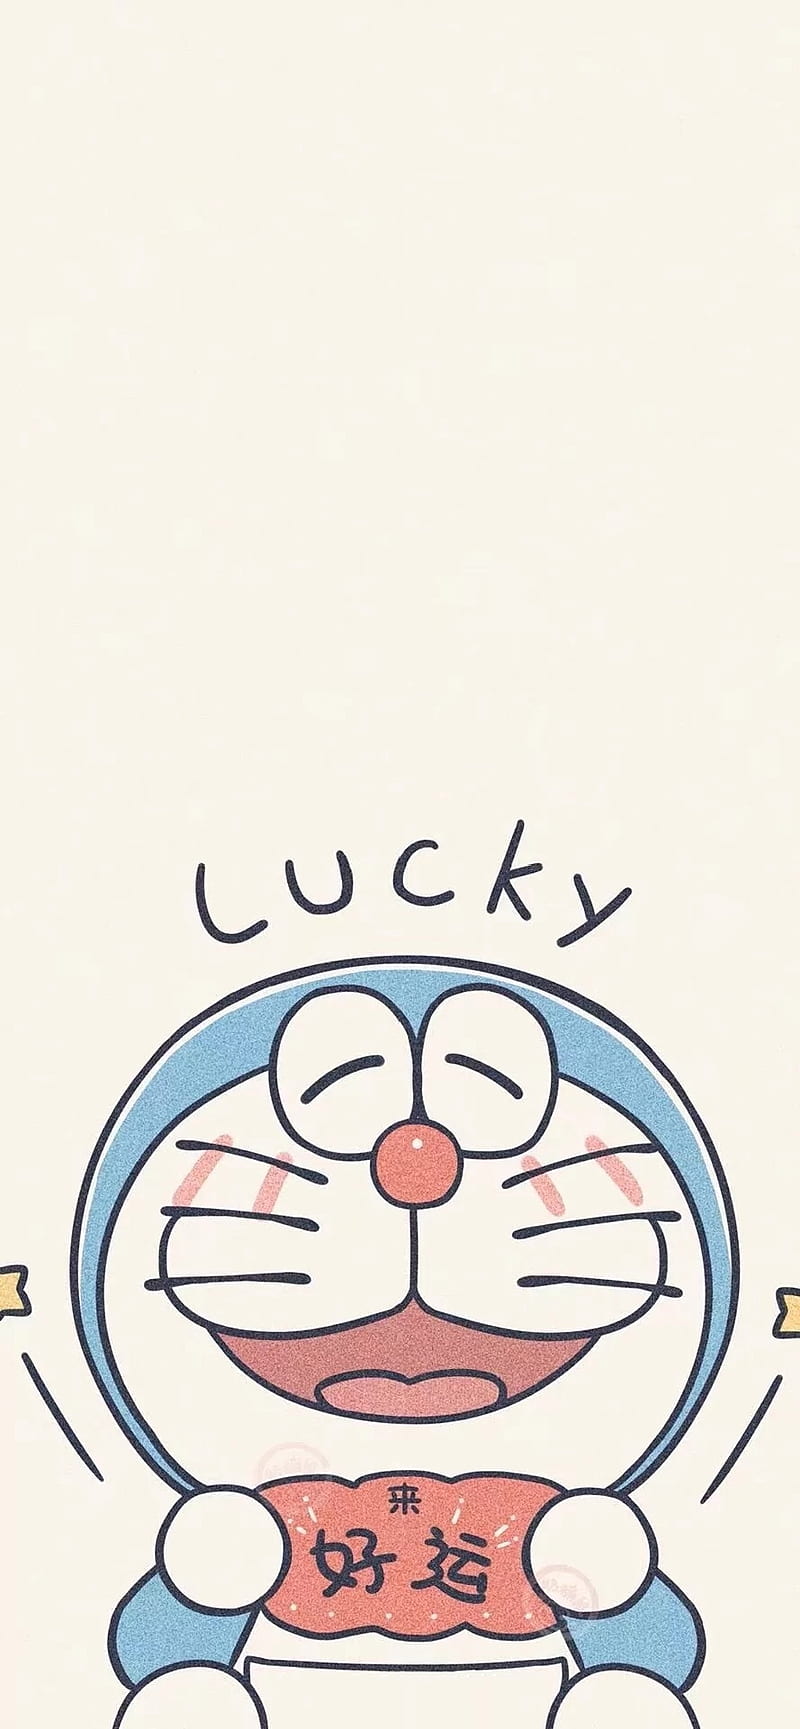 Cartoon (or Doraemon cartoon): Một bộ phim hoạt hình vui nhộn và thú vị, Doraemon thích hợp cho cả trẻ con và người lớn. Được xem là \